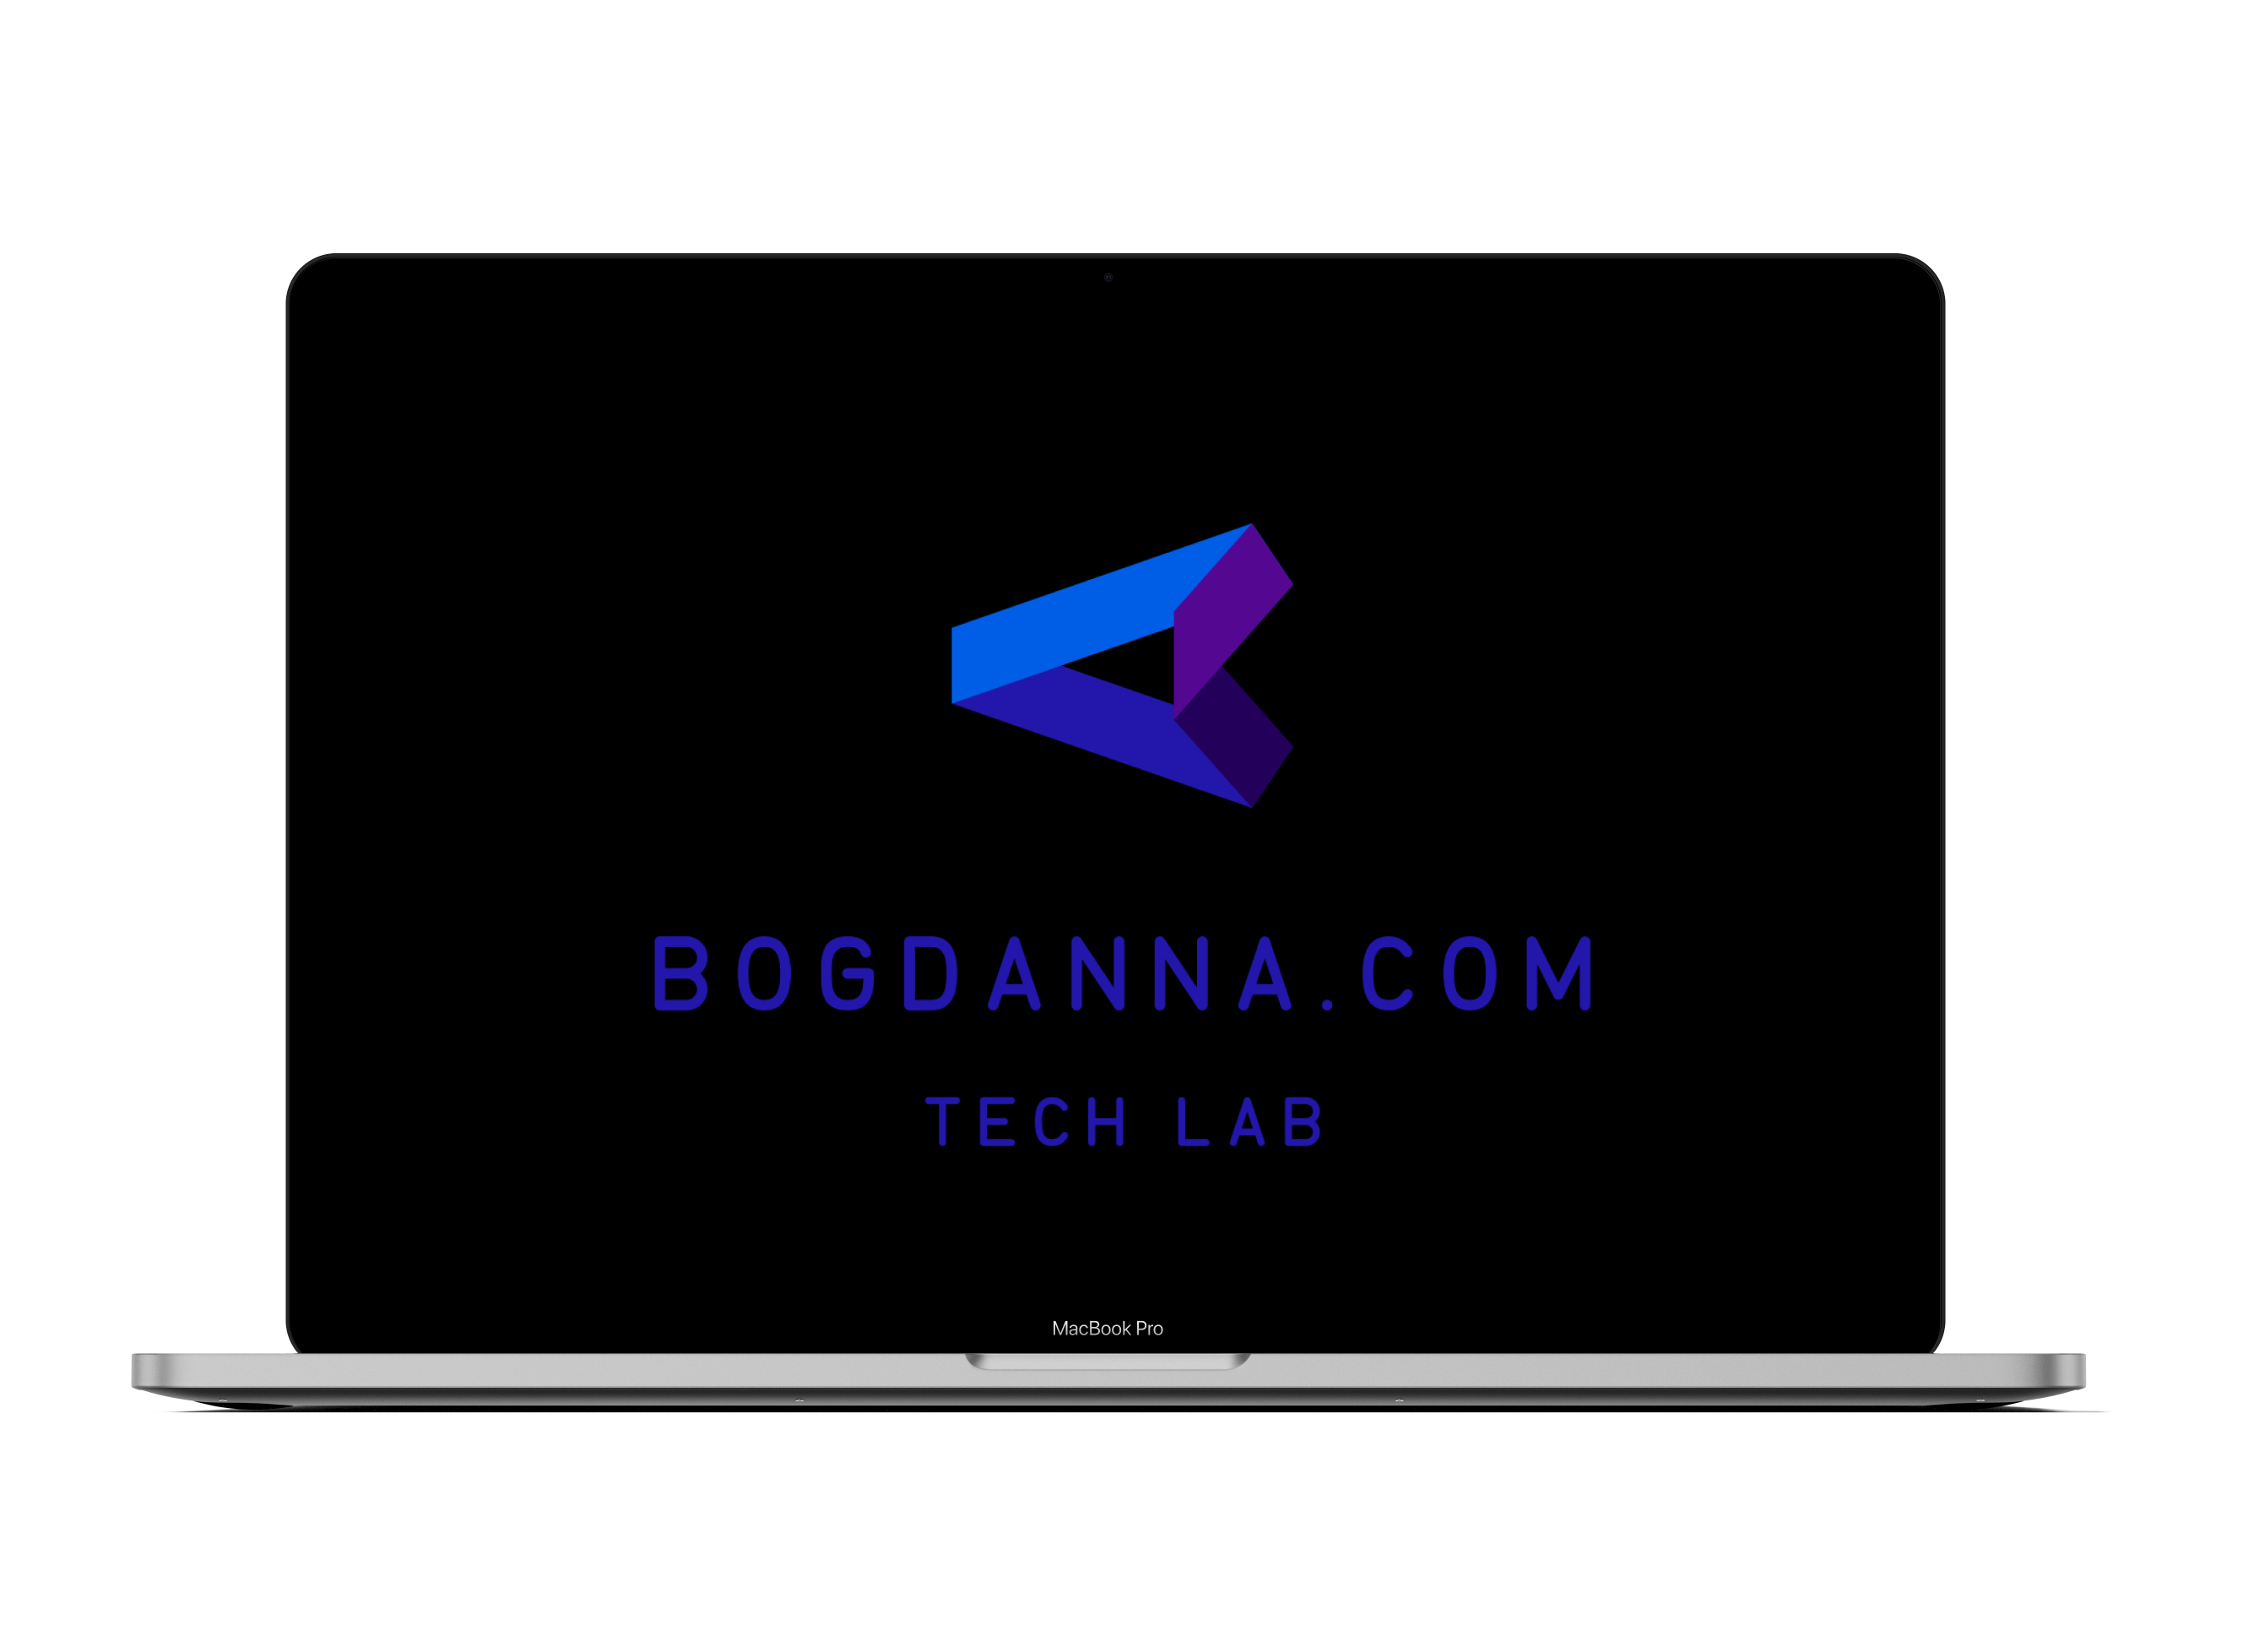 bogdanna.com